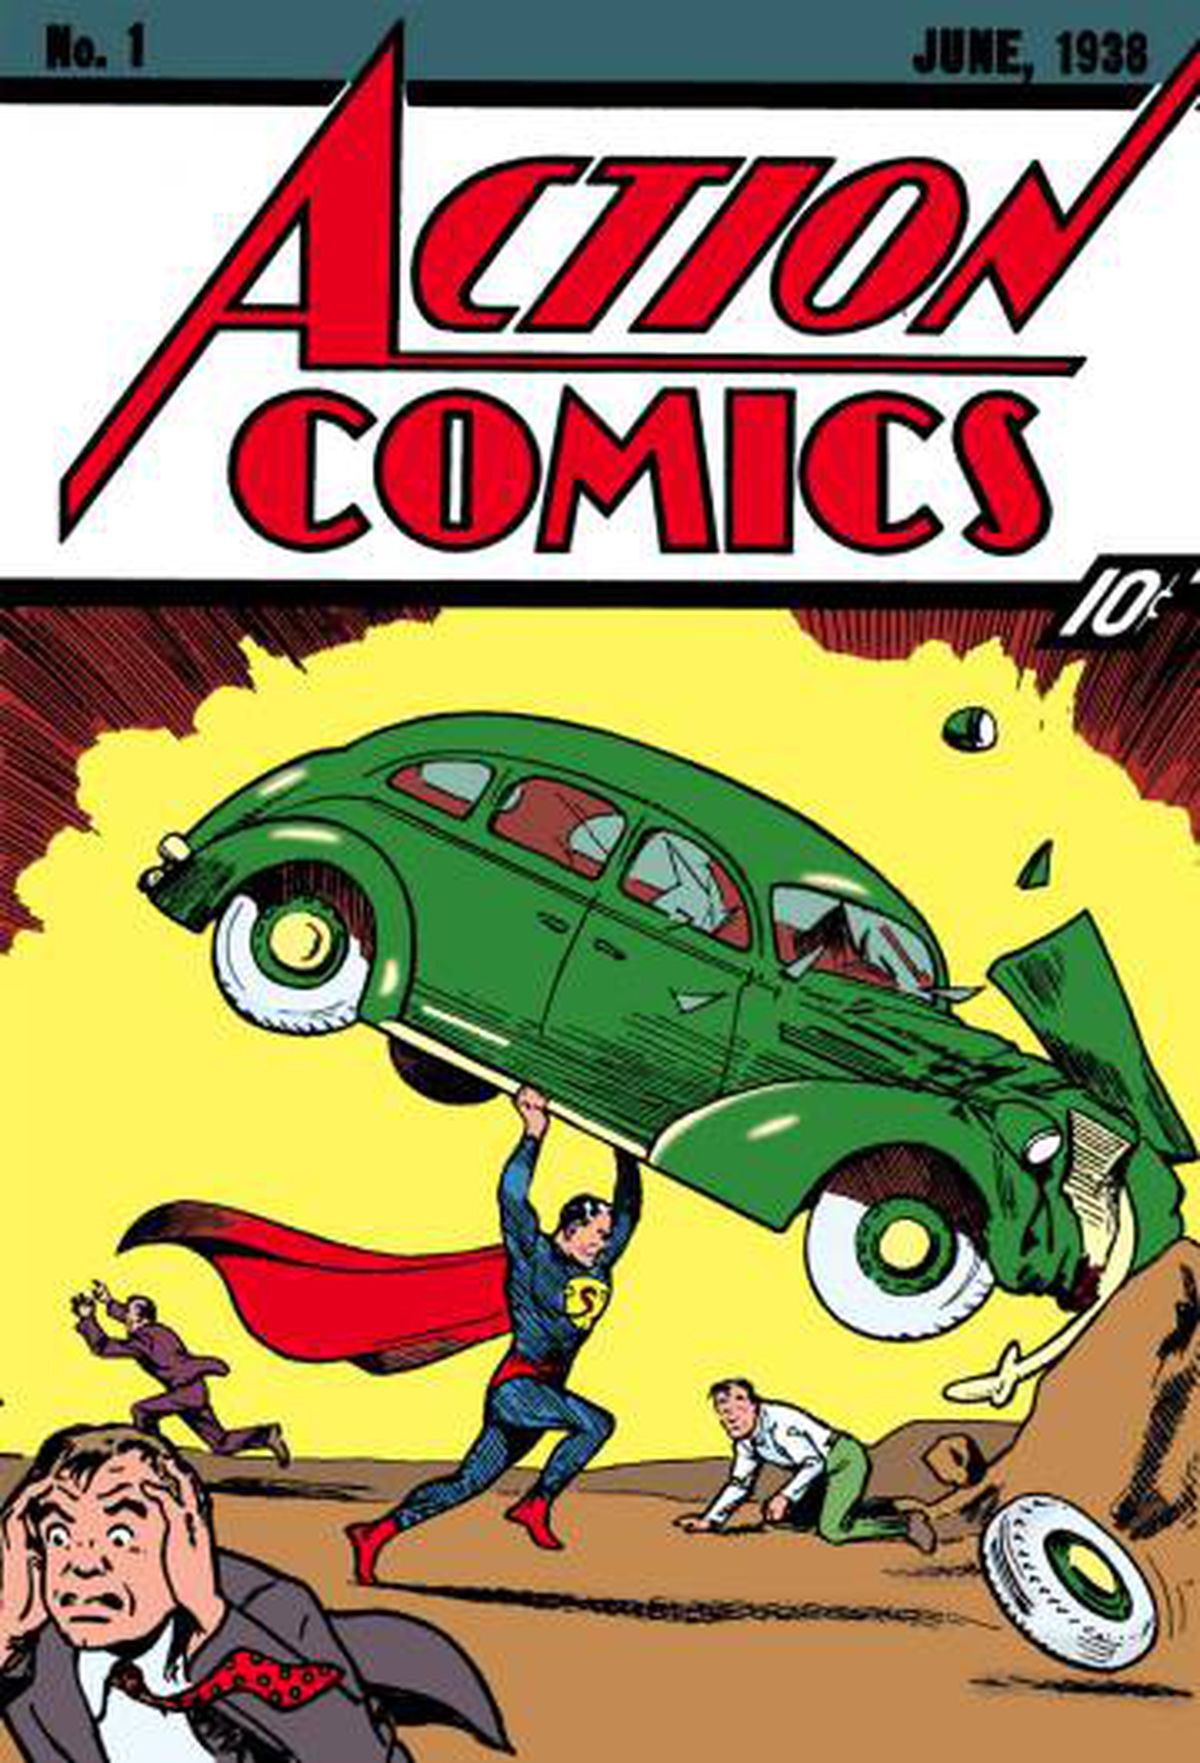 El primer número de Action Comics con la aparición de Superman costó 10 centavos de dólar. Hoy uno de esos ejemplares llegó a ser subastado por casi un millón de dólares